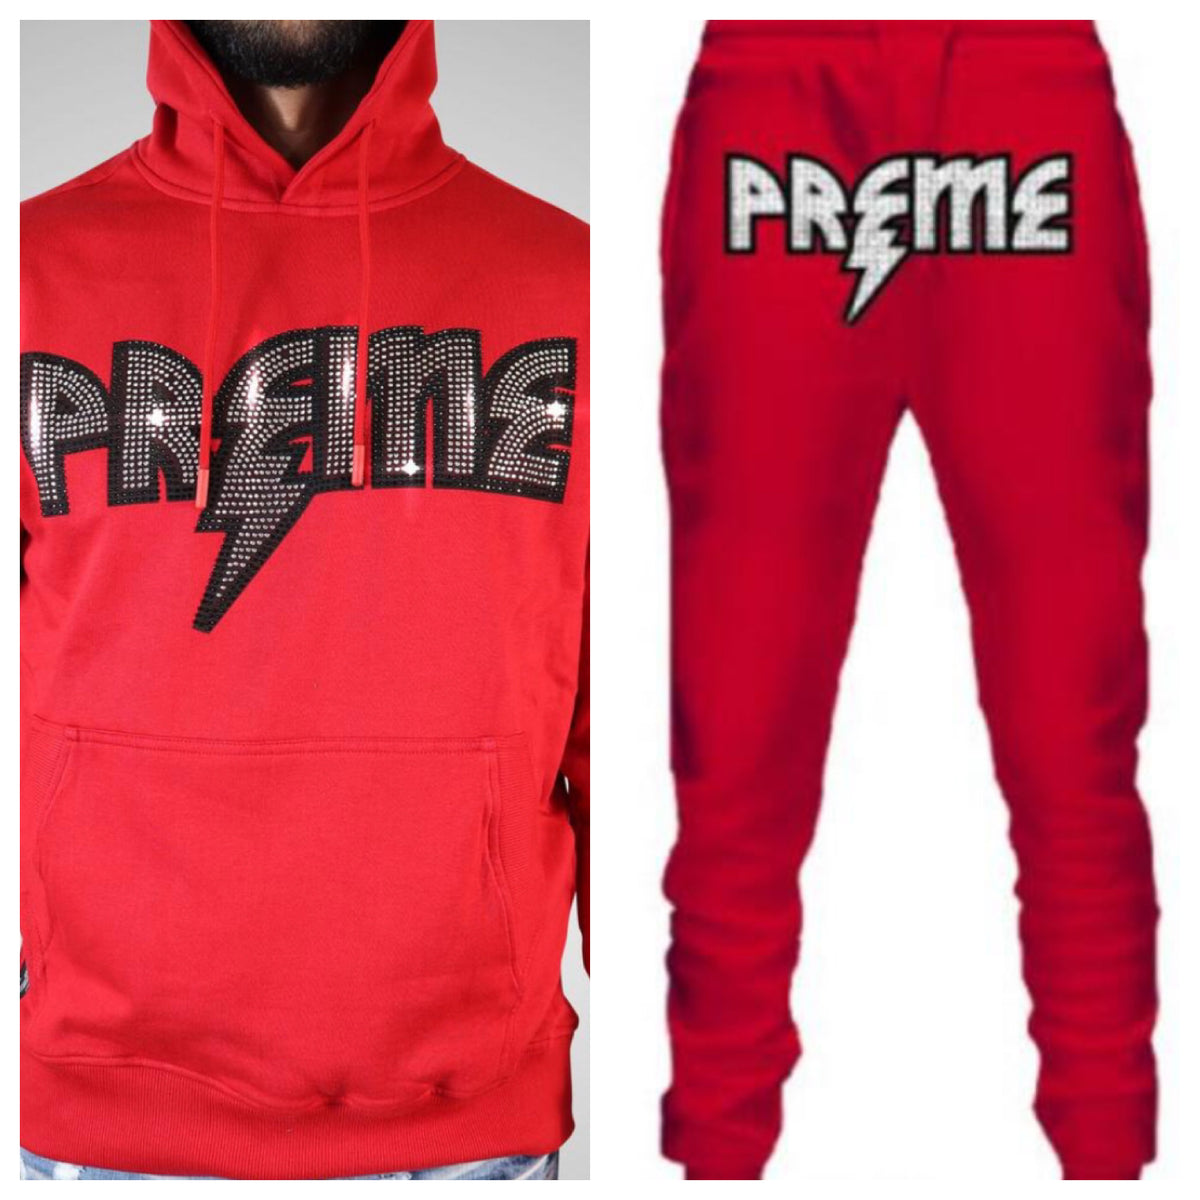 Preme-Studded Logo Jogging Set-Red/Silver